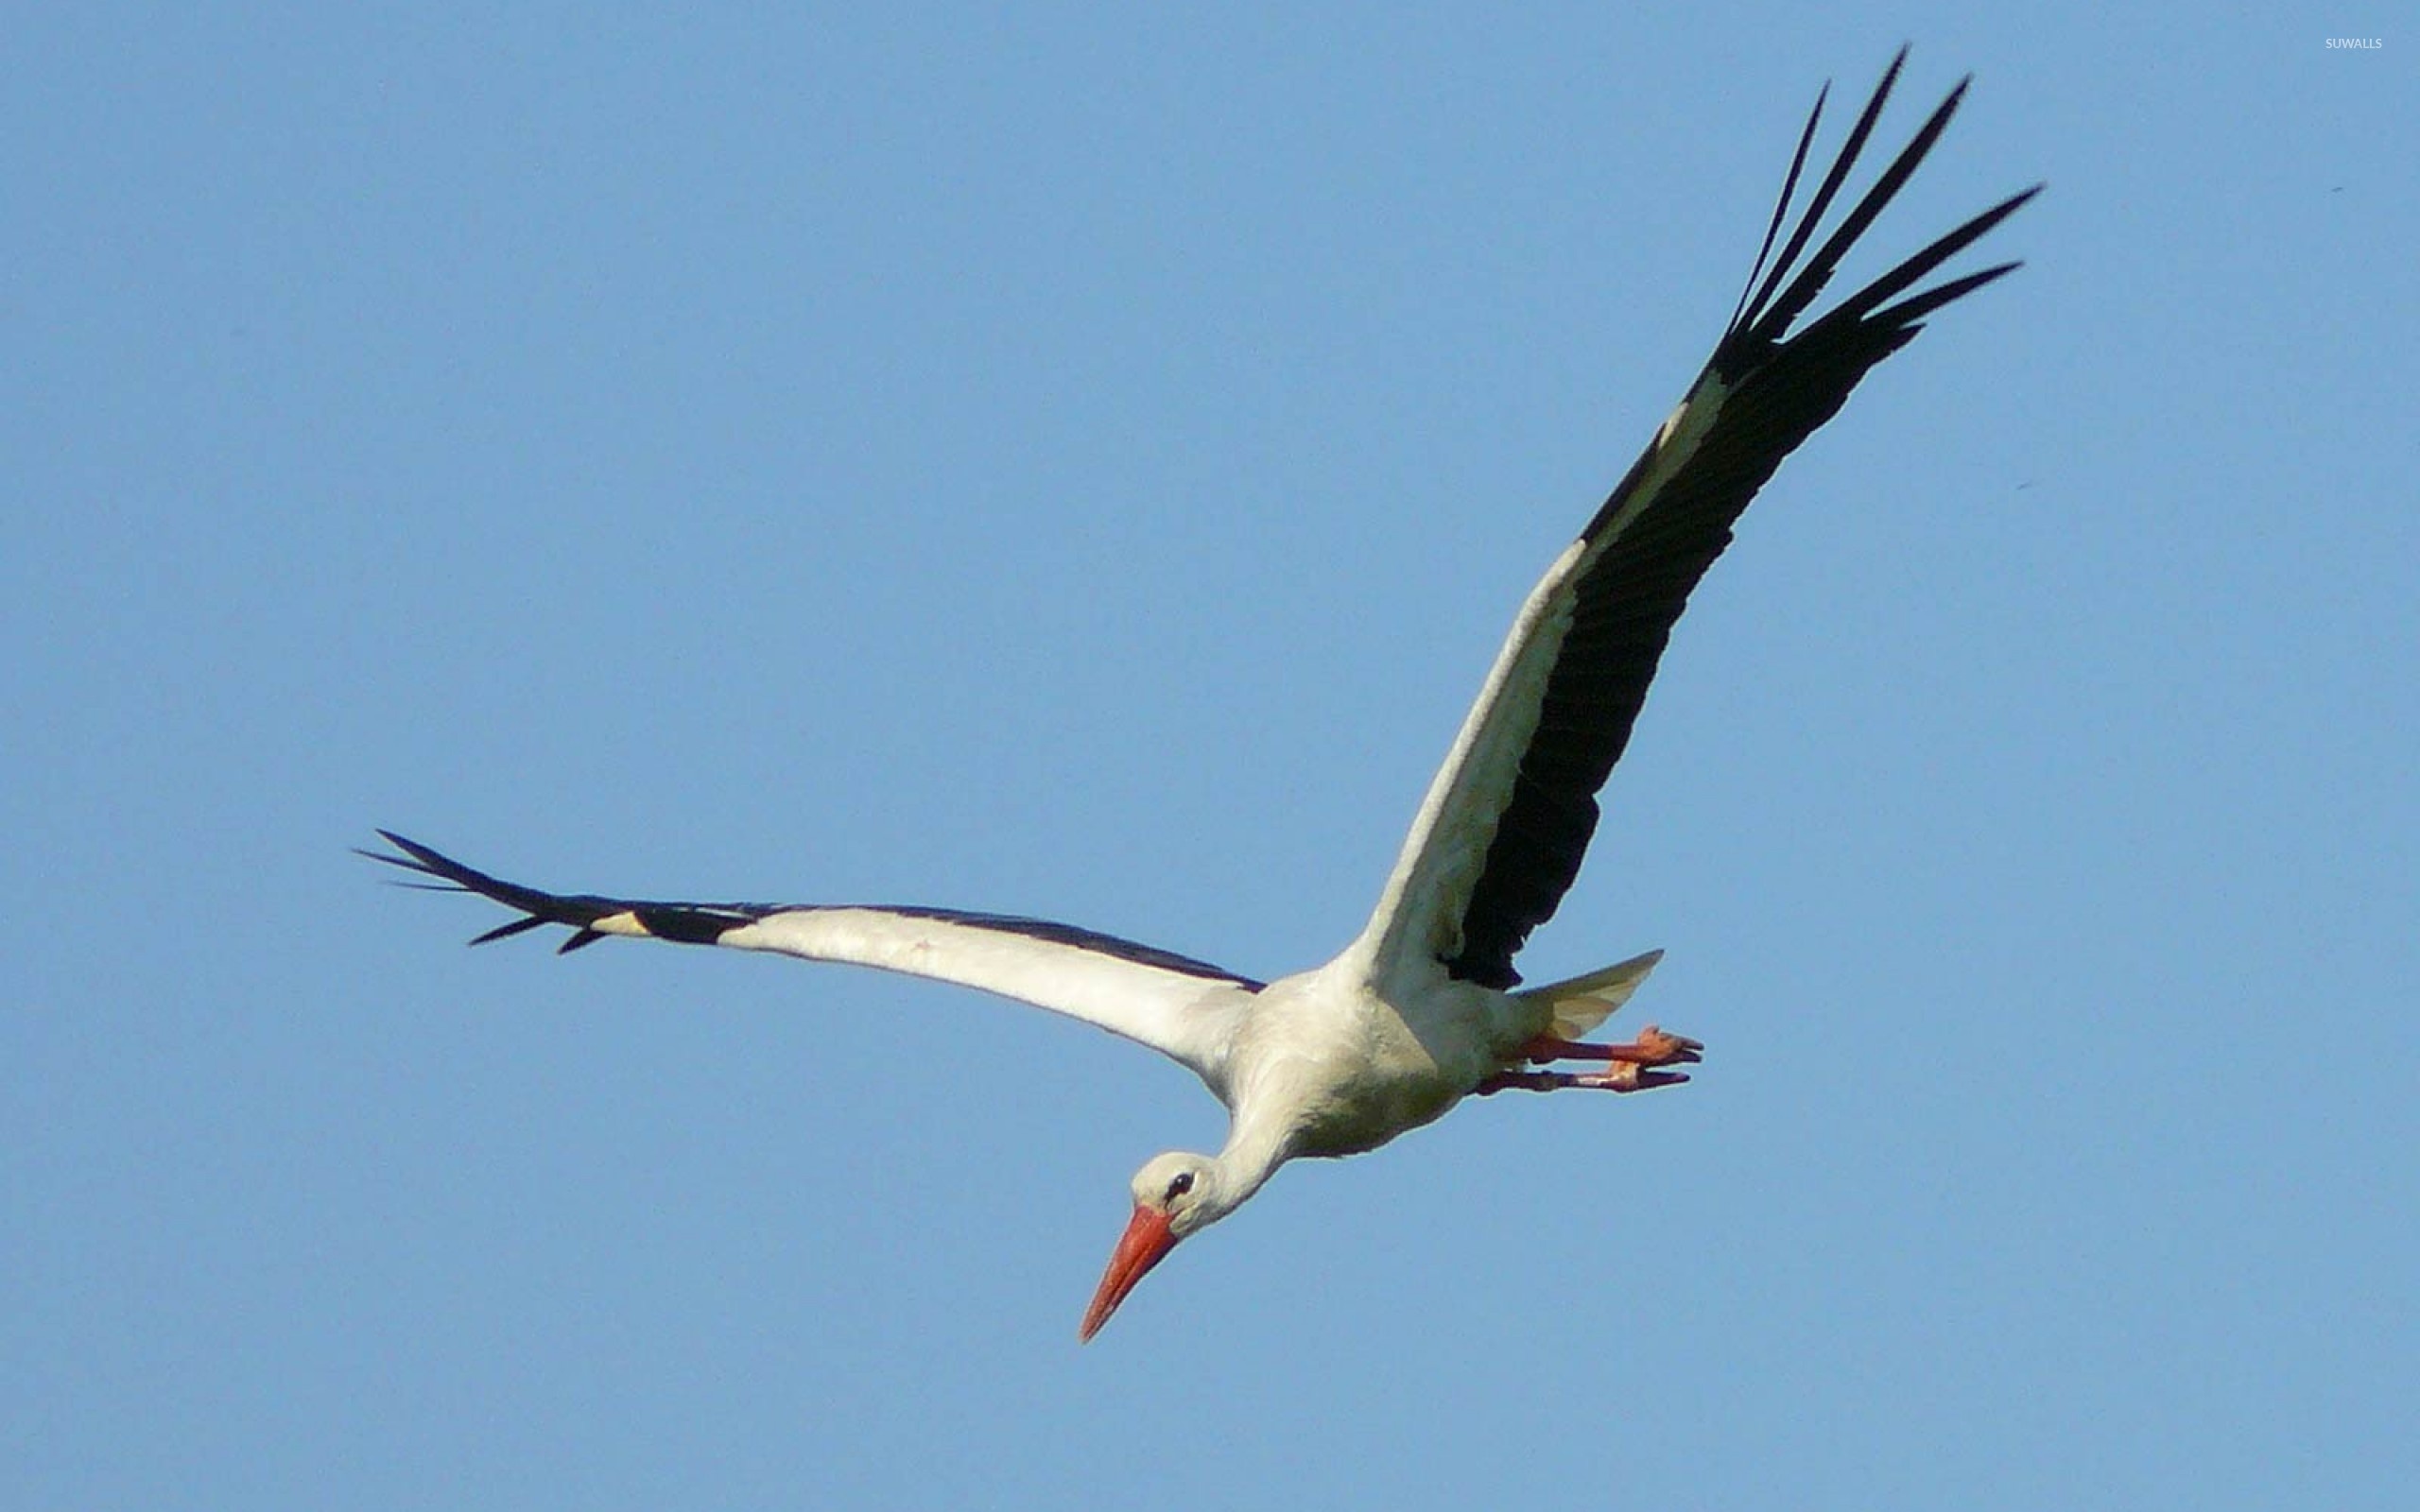 Stork in flight, Bird wallpaper, Animal wallpapers, Elegant creature, 2560x1600 HD Desktop